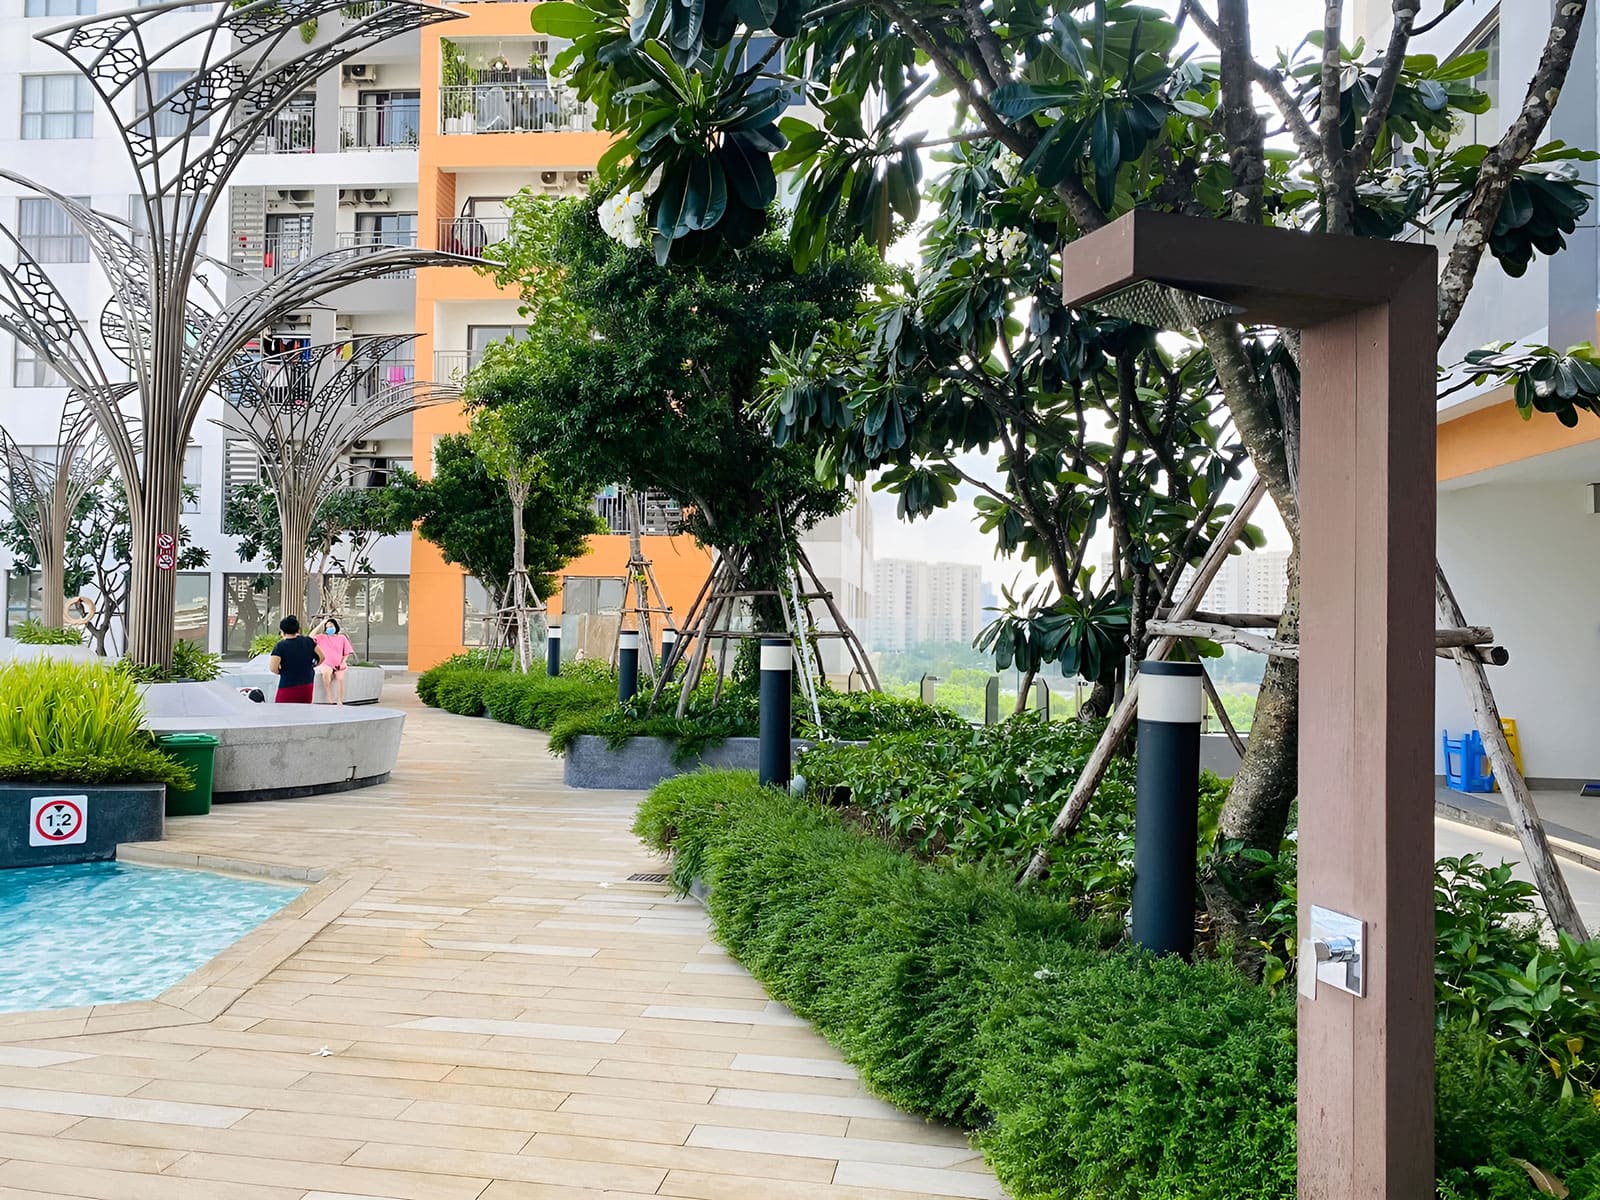 Hình ảnh thực tế khuôn viên nội khu tại dự án The Sun Avenue trên đường Mai Chí Thọ.